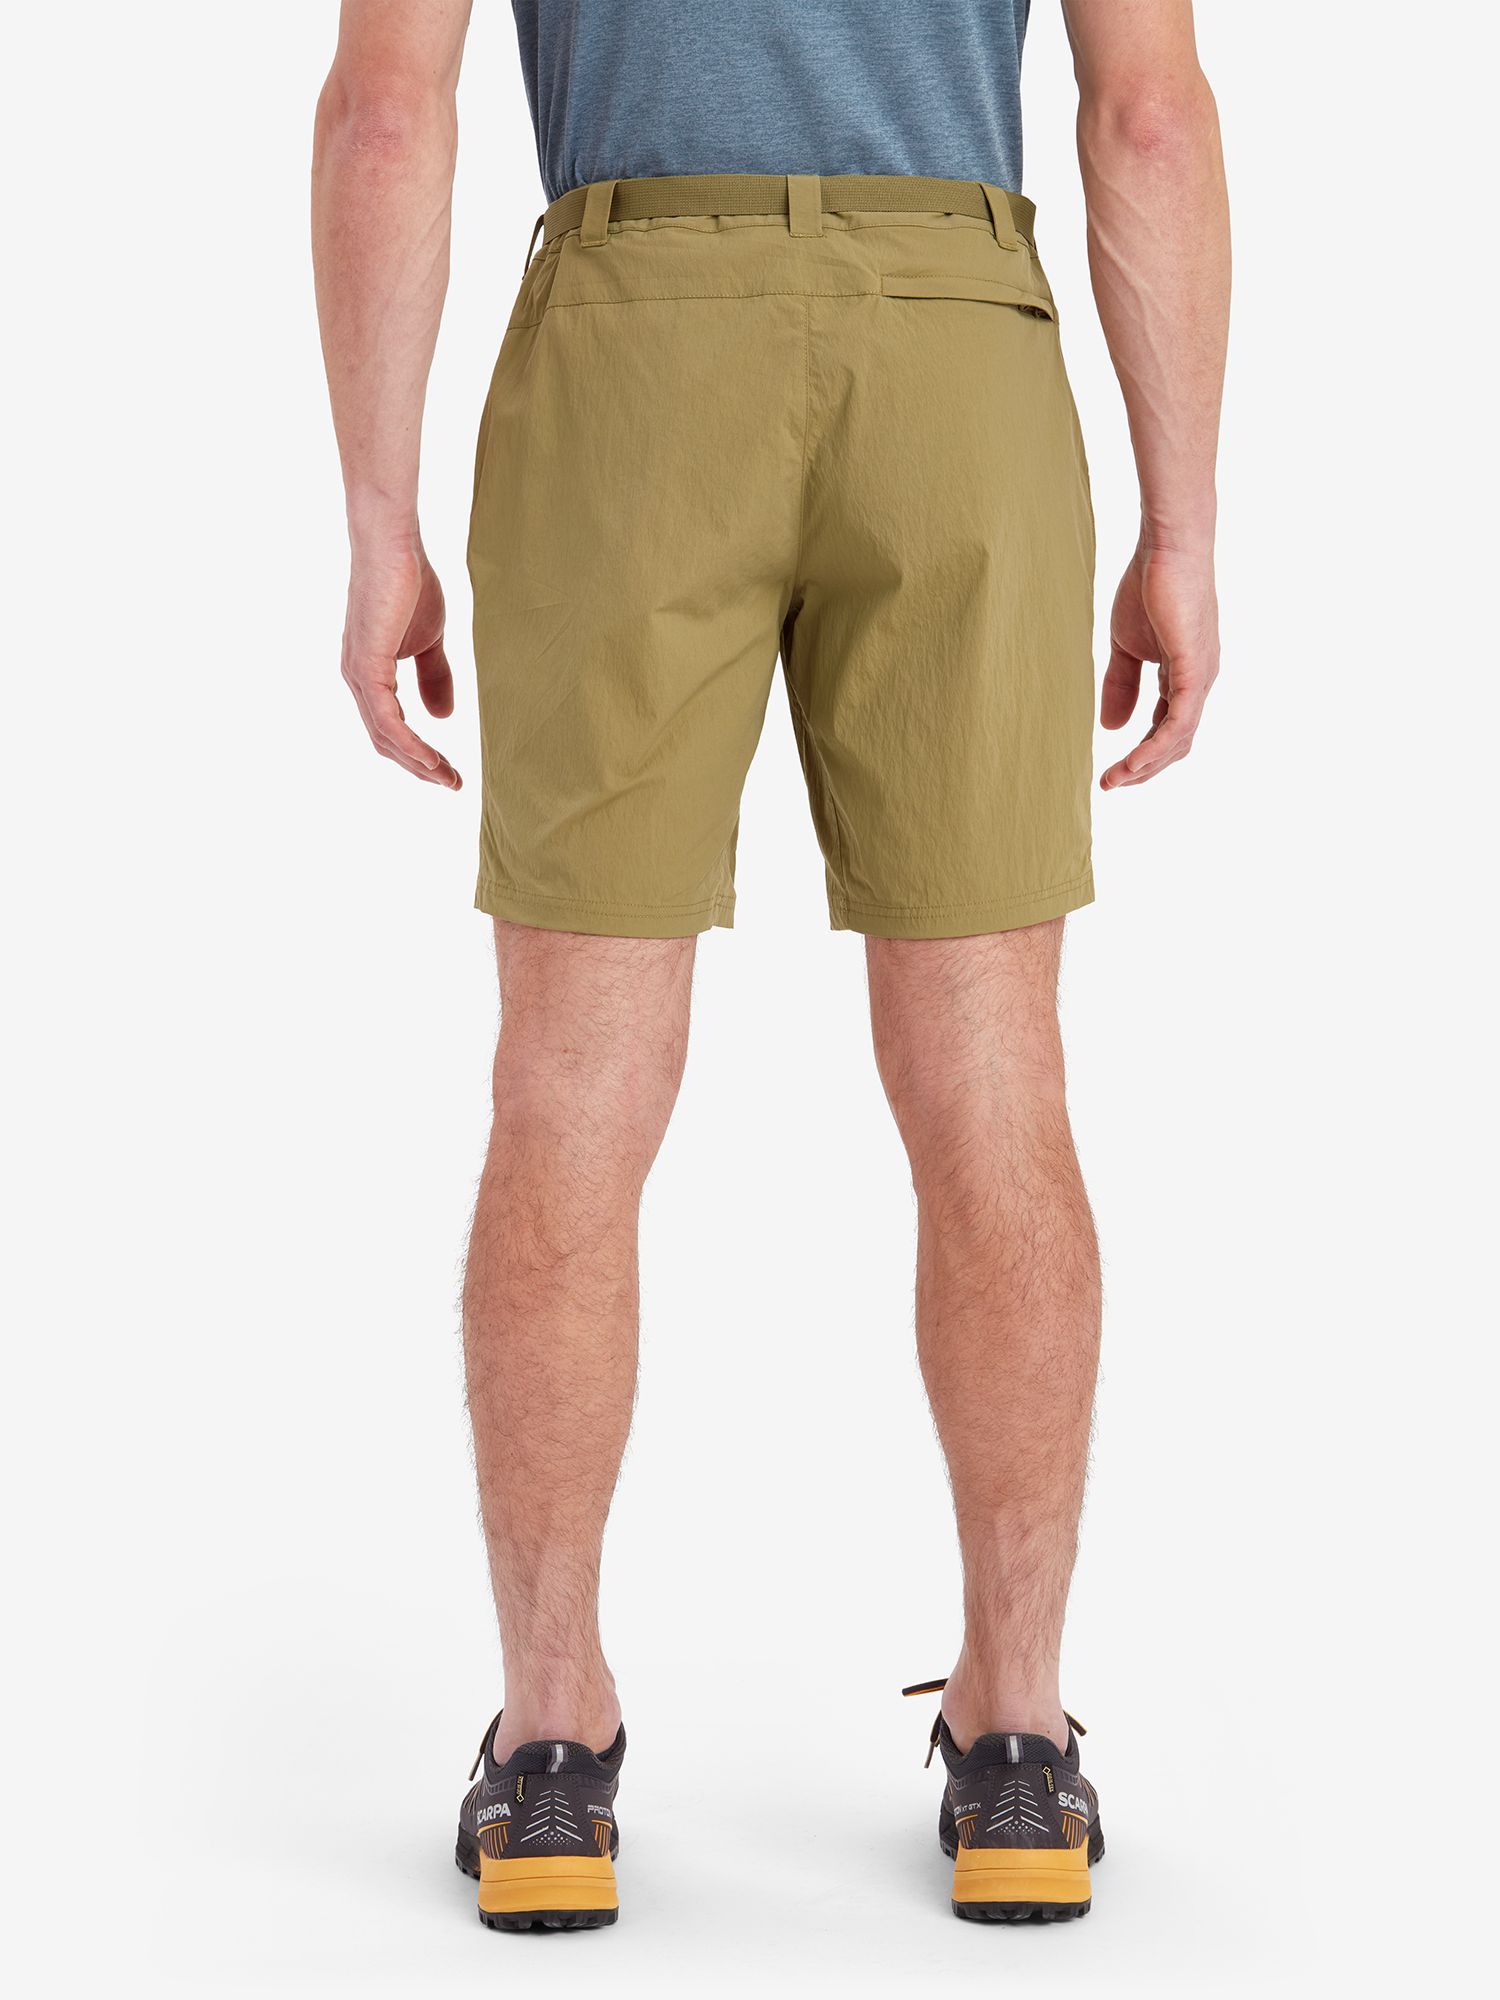 Montane Terra Lite Shorts, Olive, S